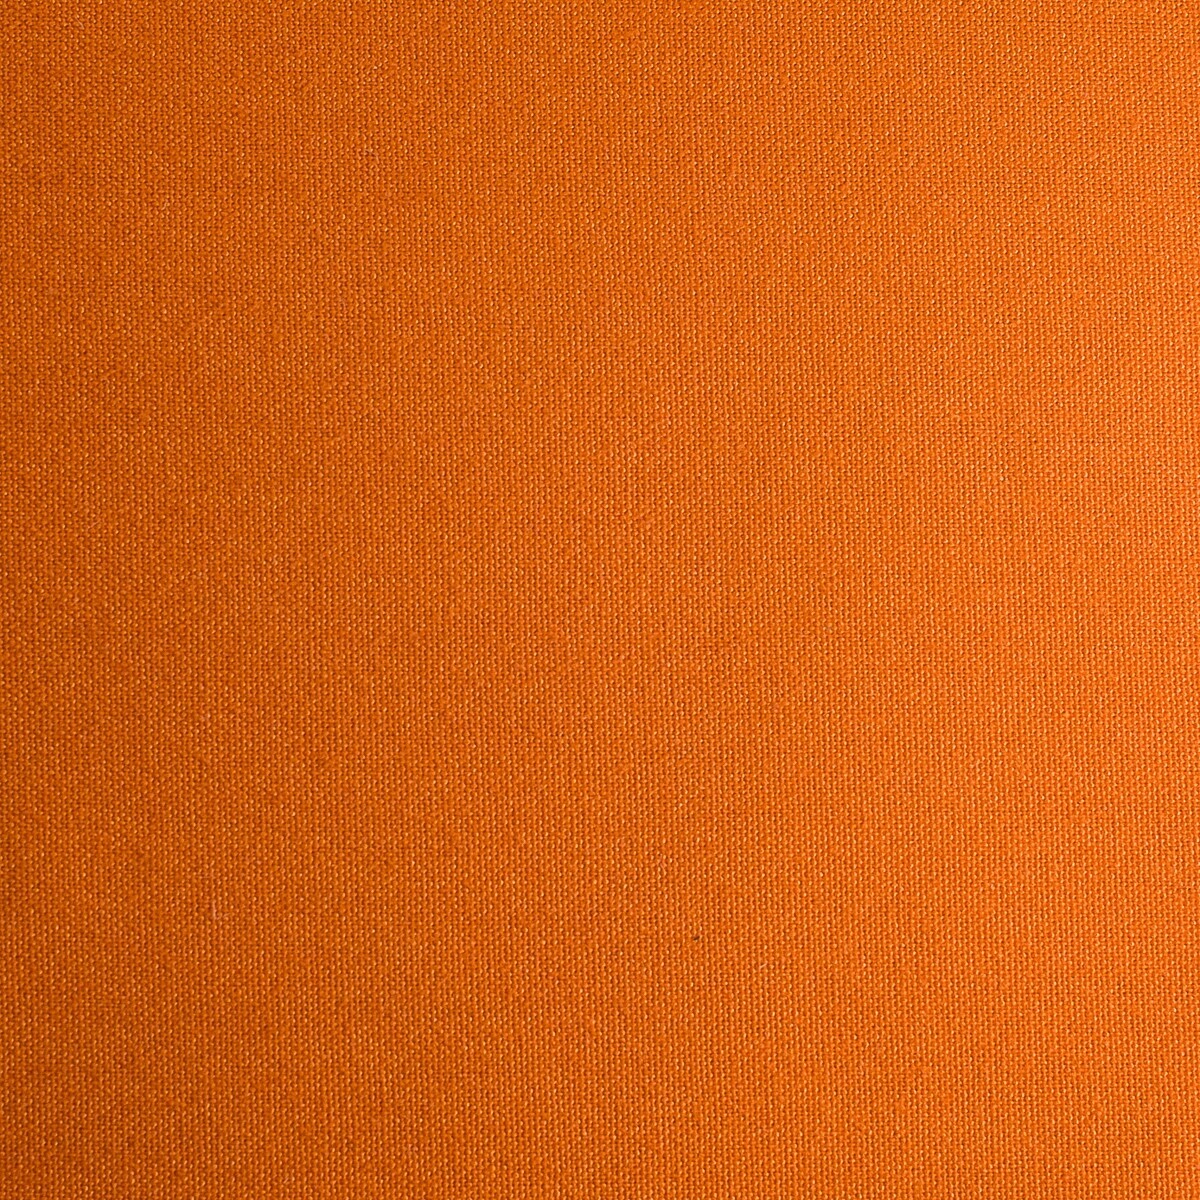 Bright Orange Solid